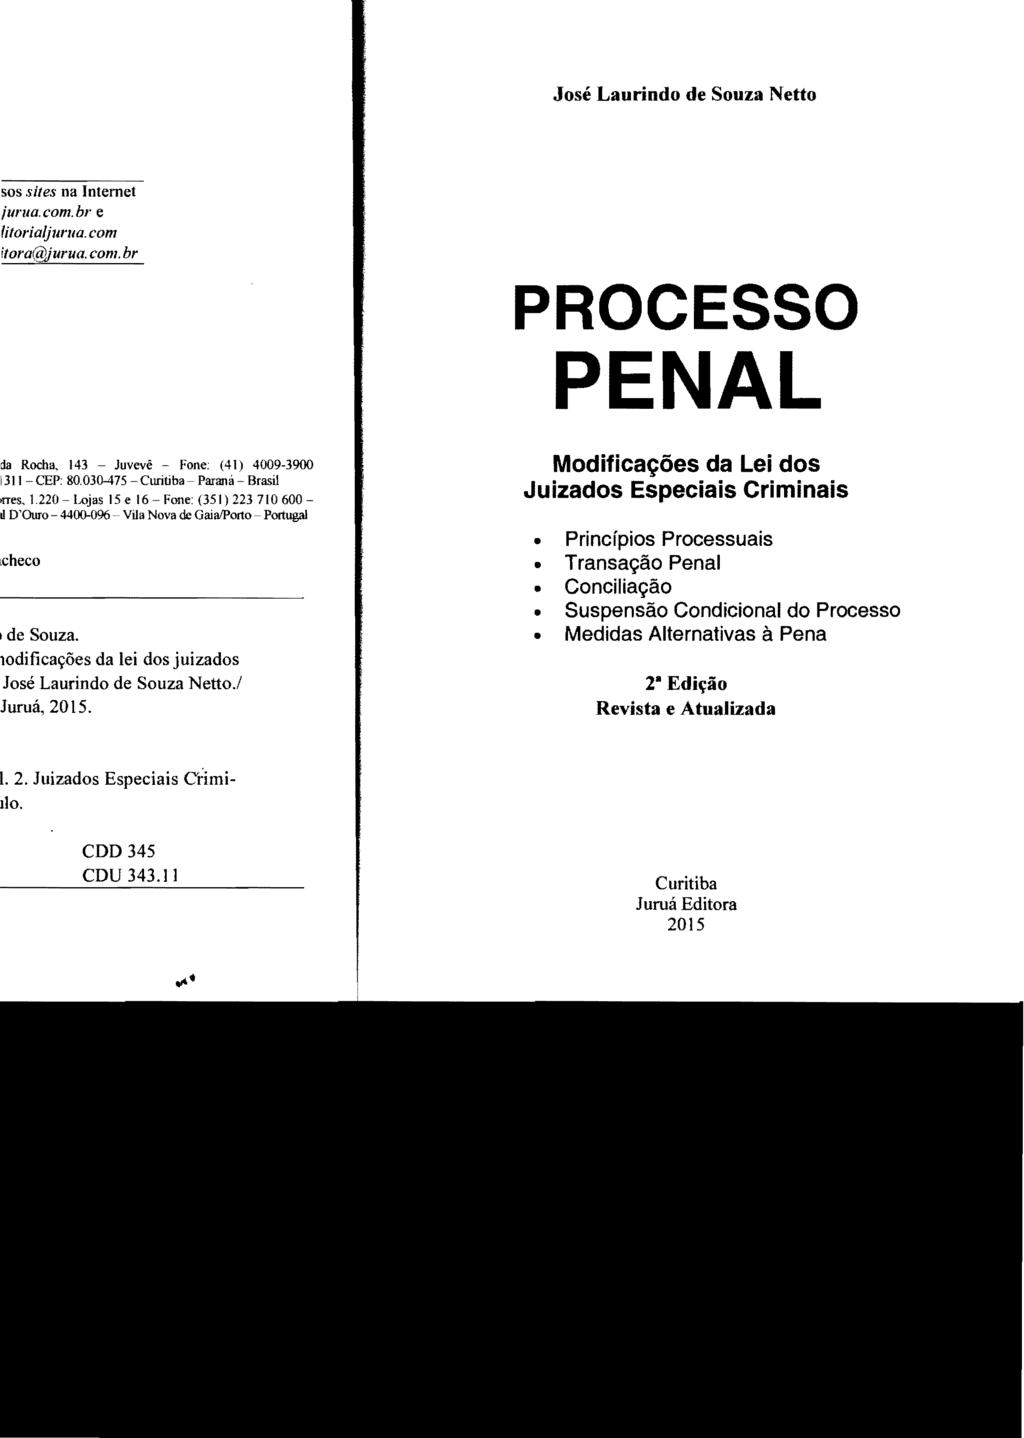 José Laurindo de Souza Netto PROCESSO PENAL Modificações da Lei dos Juizados Especiais Criminais Princípios Processuais Transação